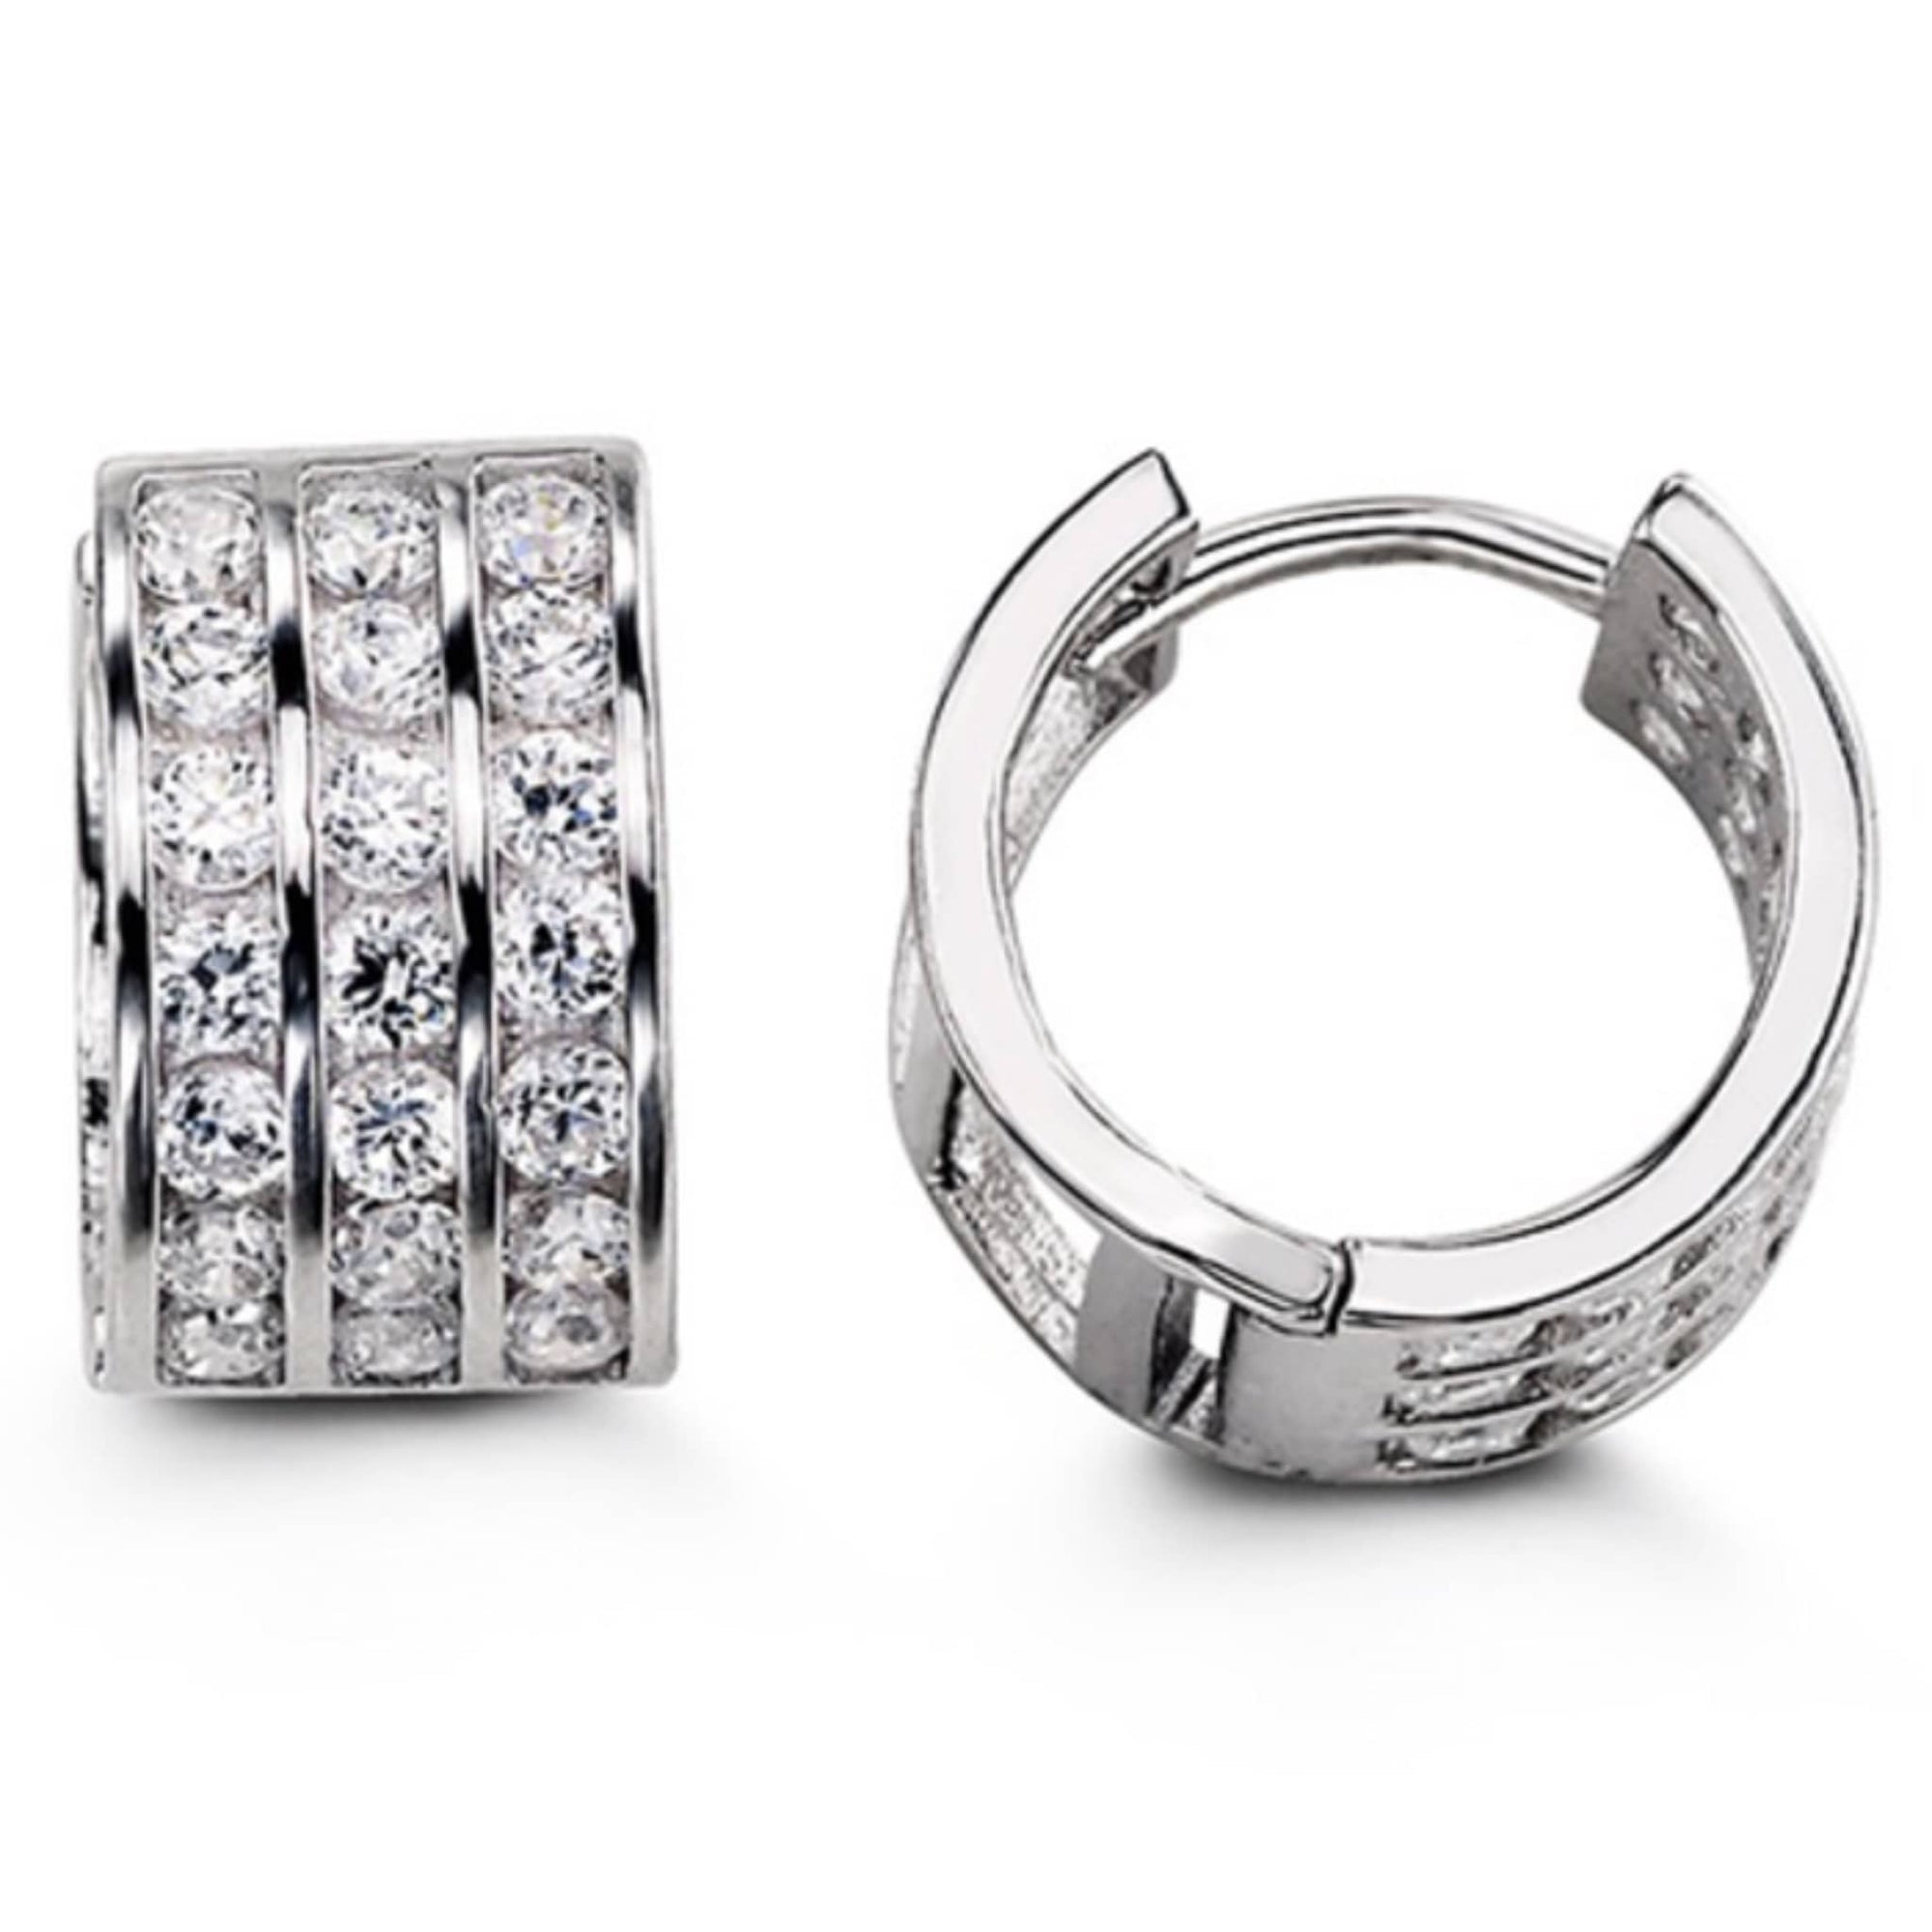 13mm Silver Triple CZ Huggie Hoop Earrings at Arman's Jewellers